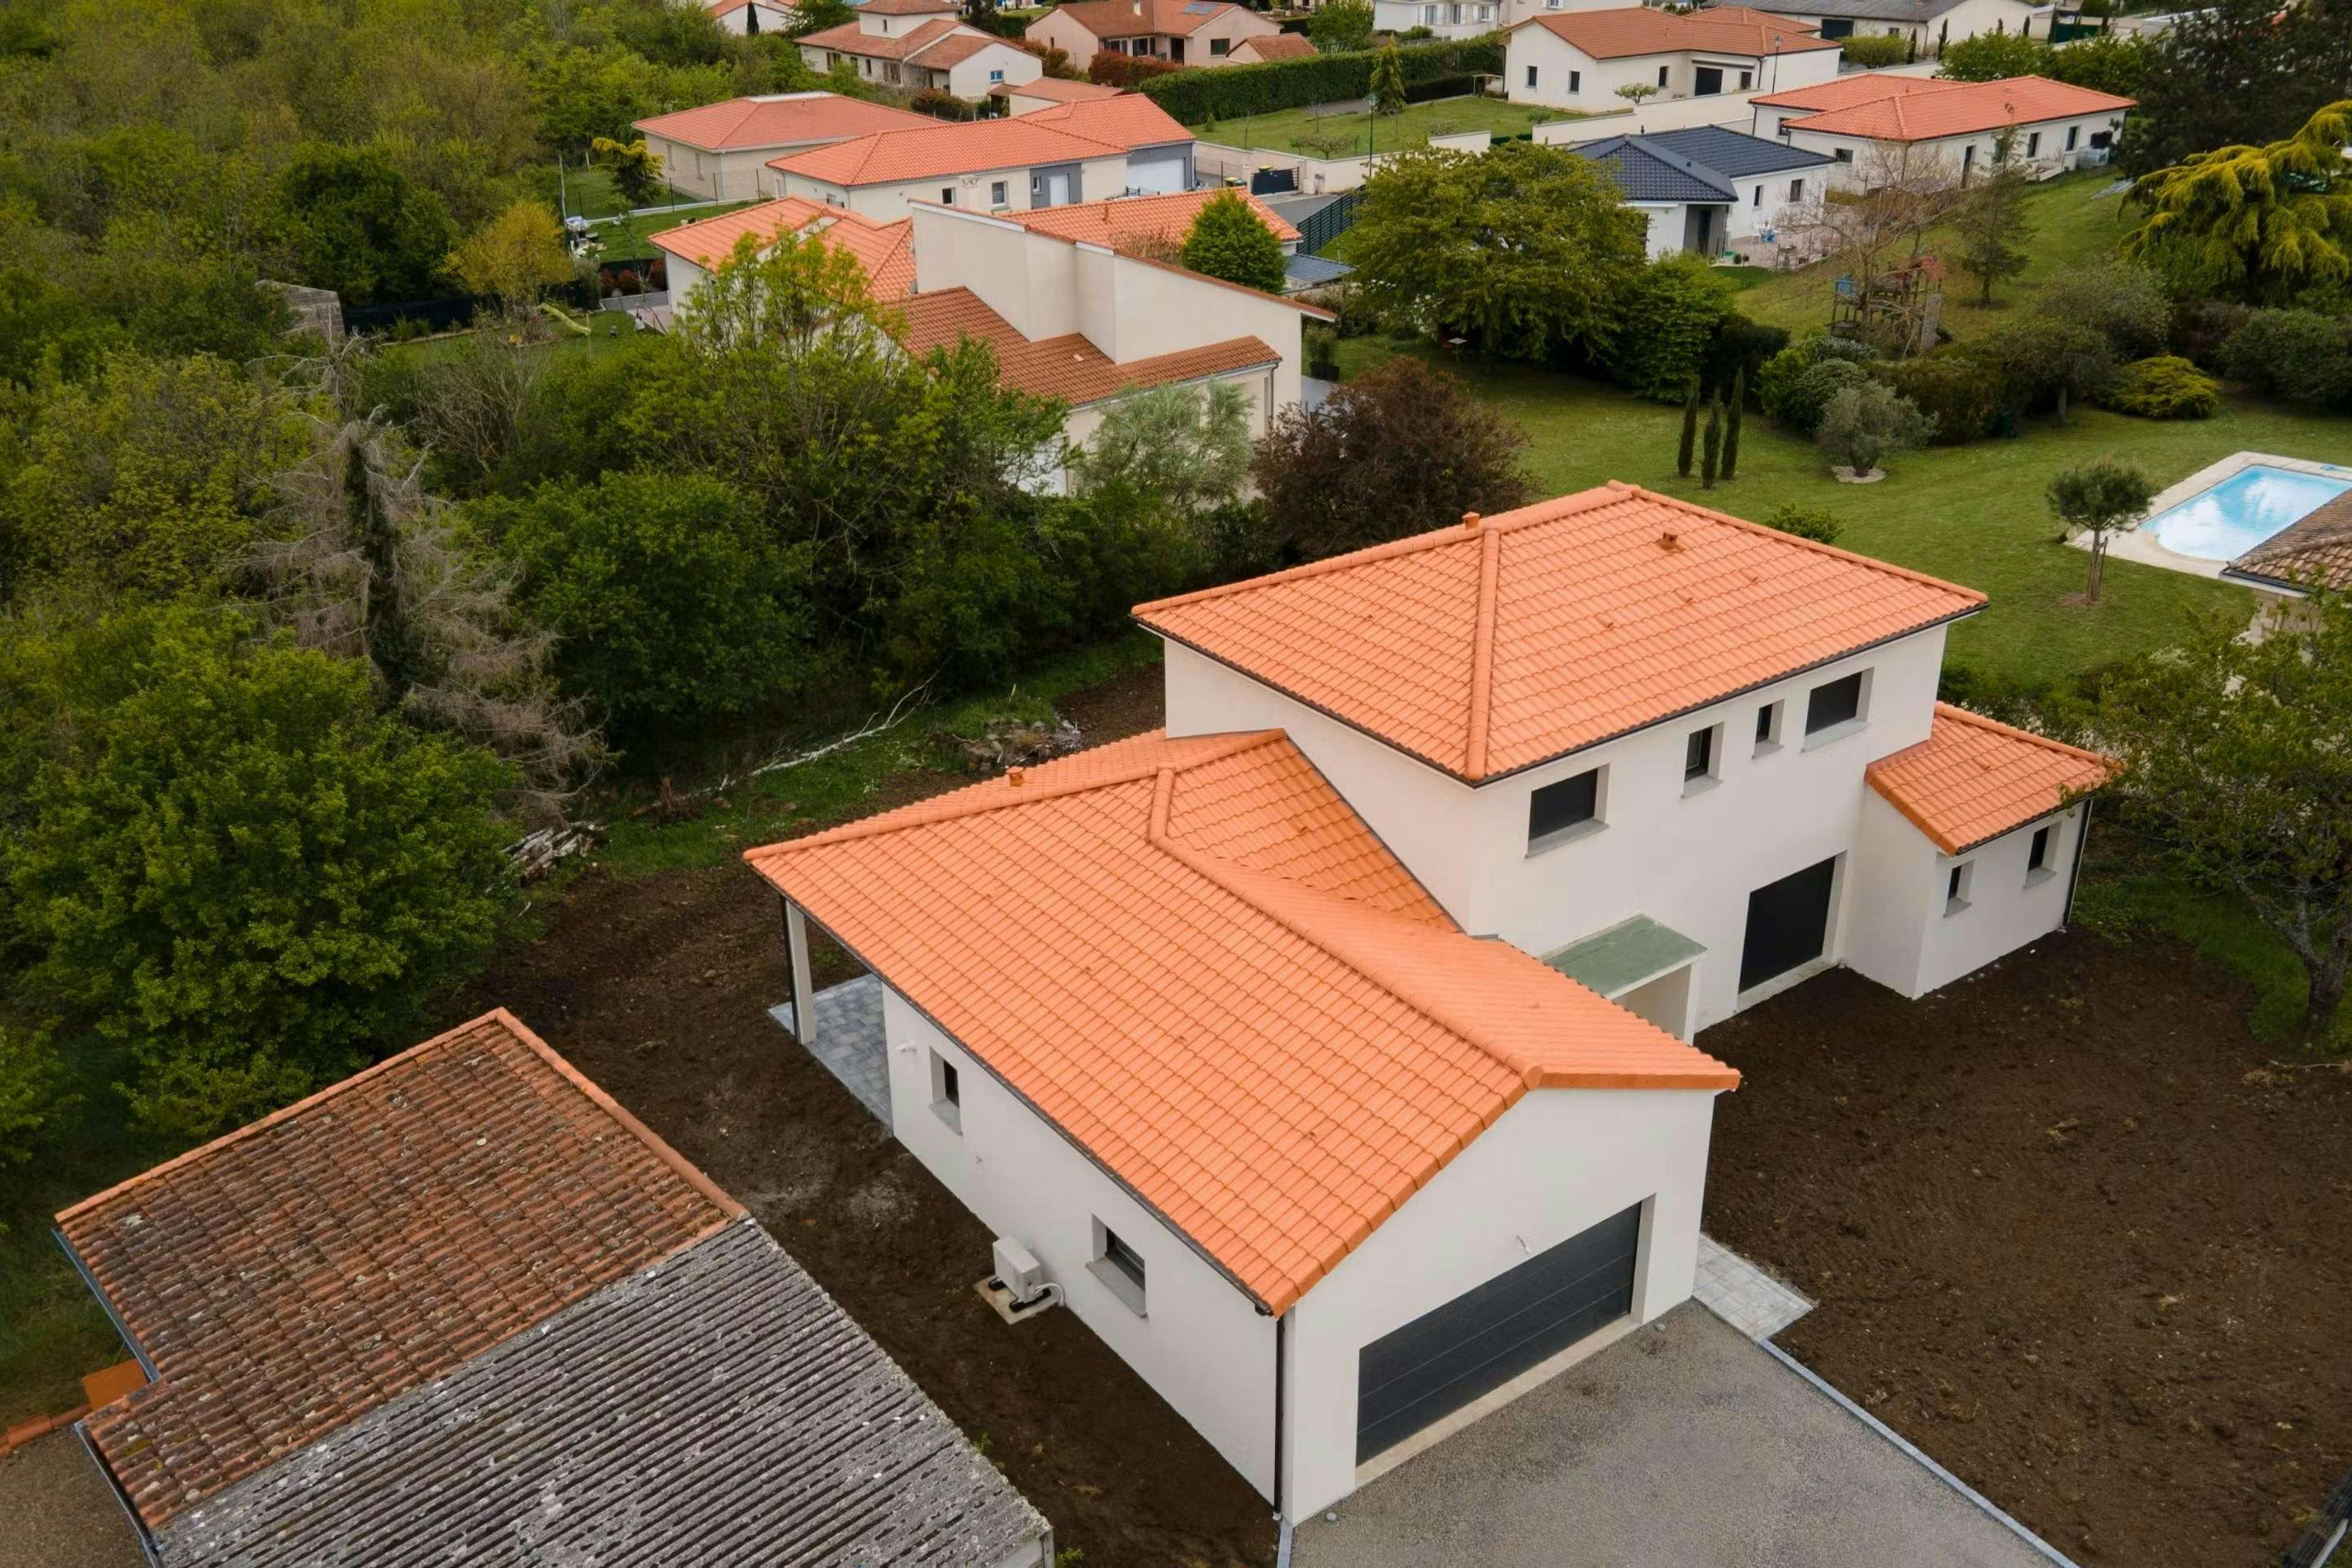 Maison à étage avec toiture en tuiles terre cuite avec vue du dessus